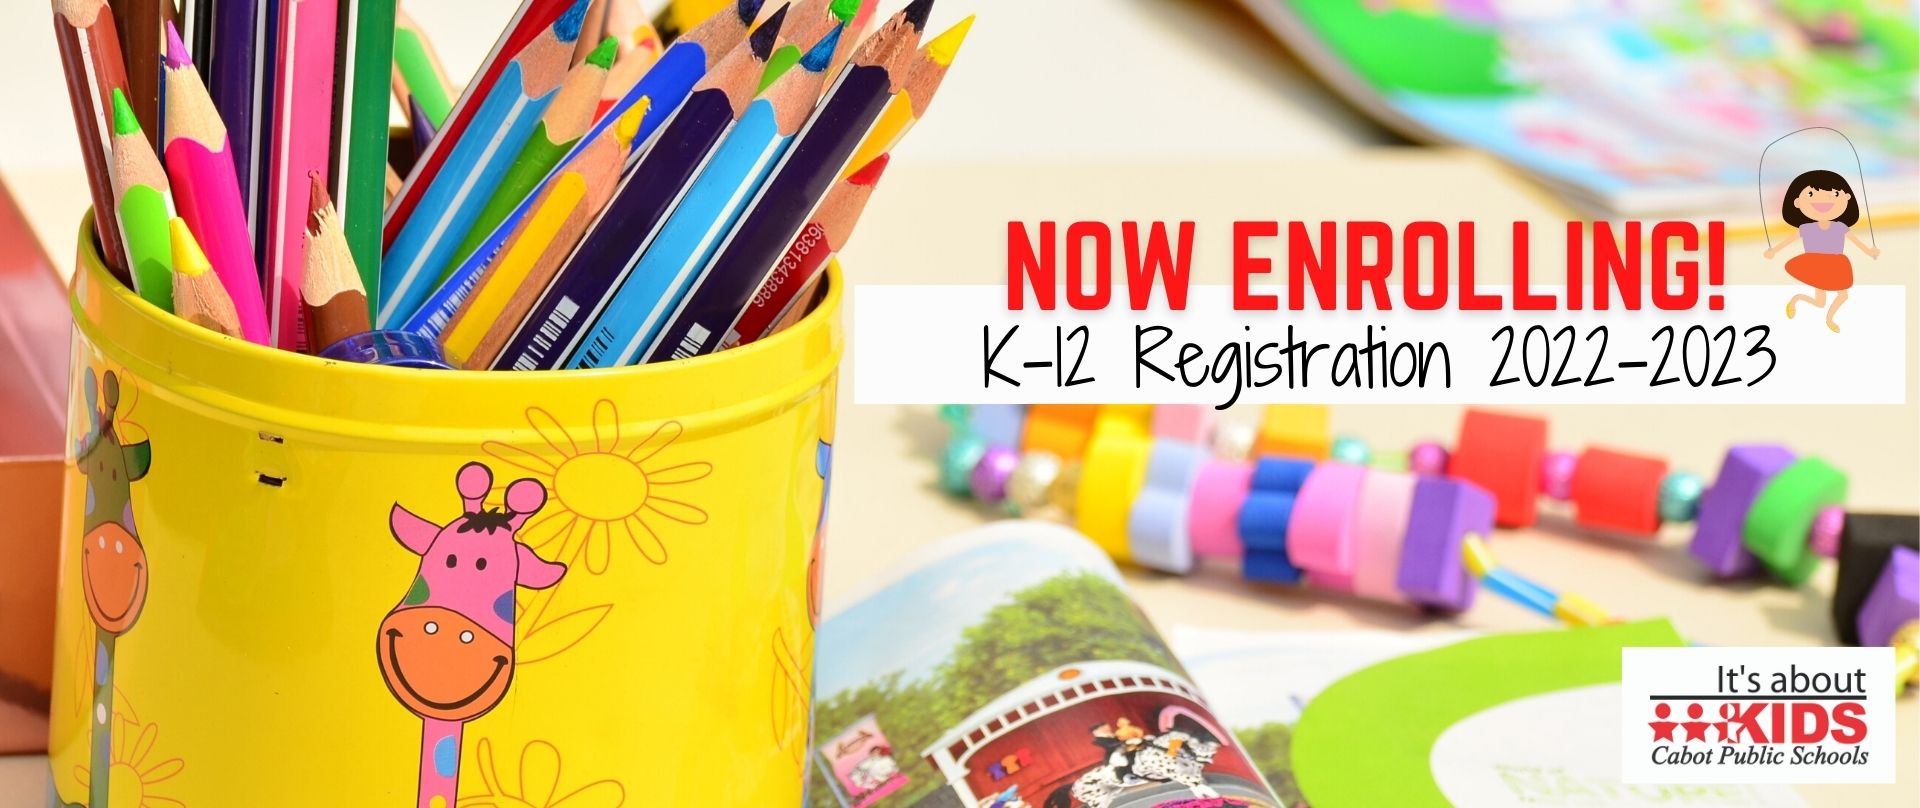 K-12 Registration